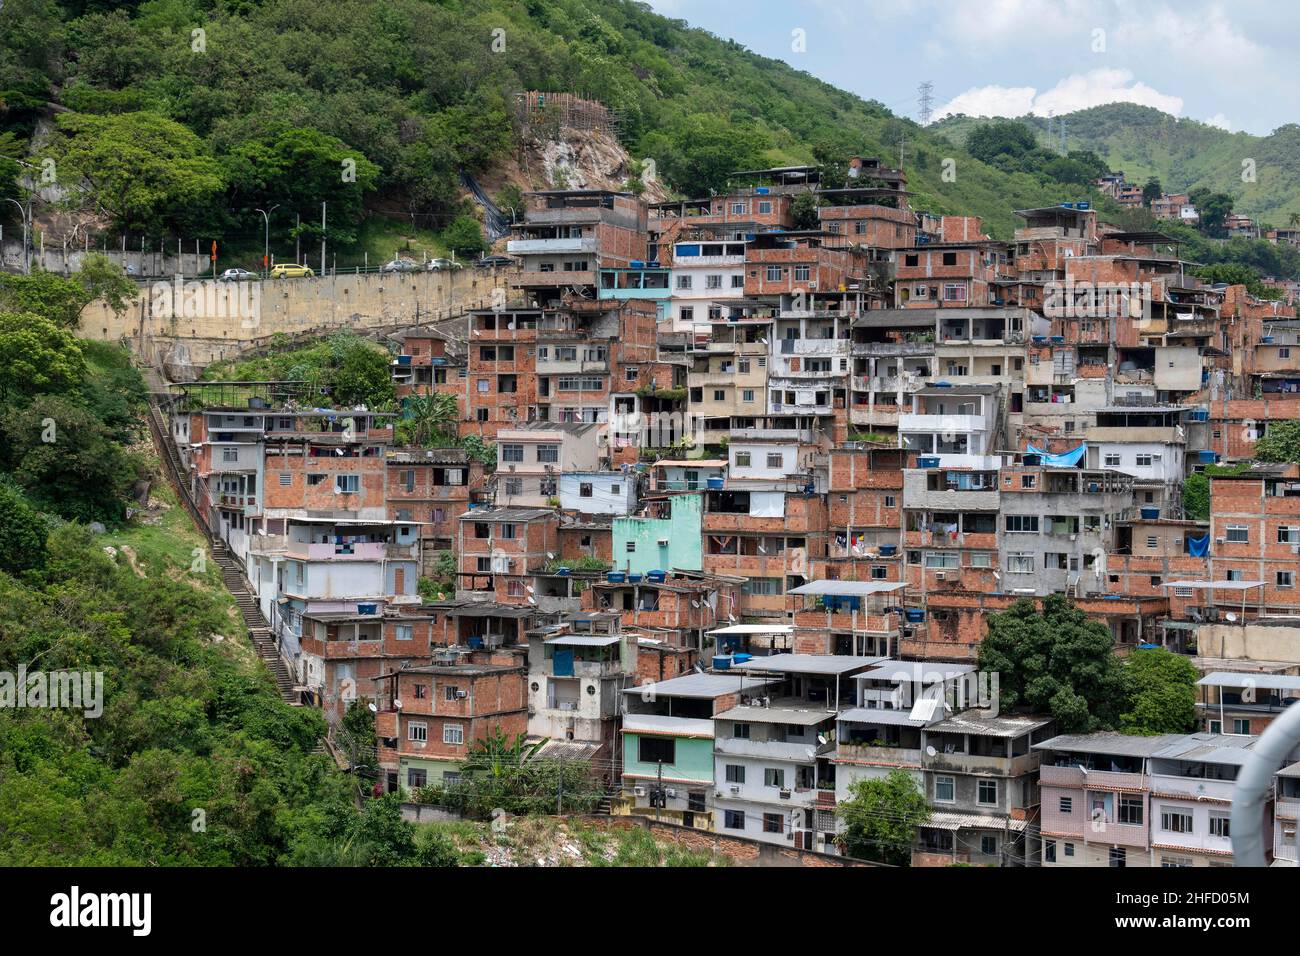 Rio, Brasile - 14 novembre 2021: Vista di una comunità povera su una collina nel nord della città, mostrando la vegetazione vicina Foto Stock